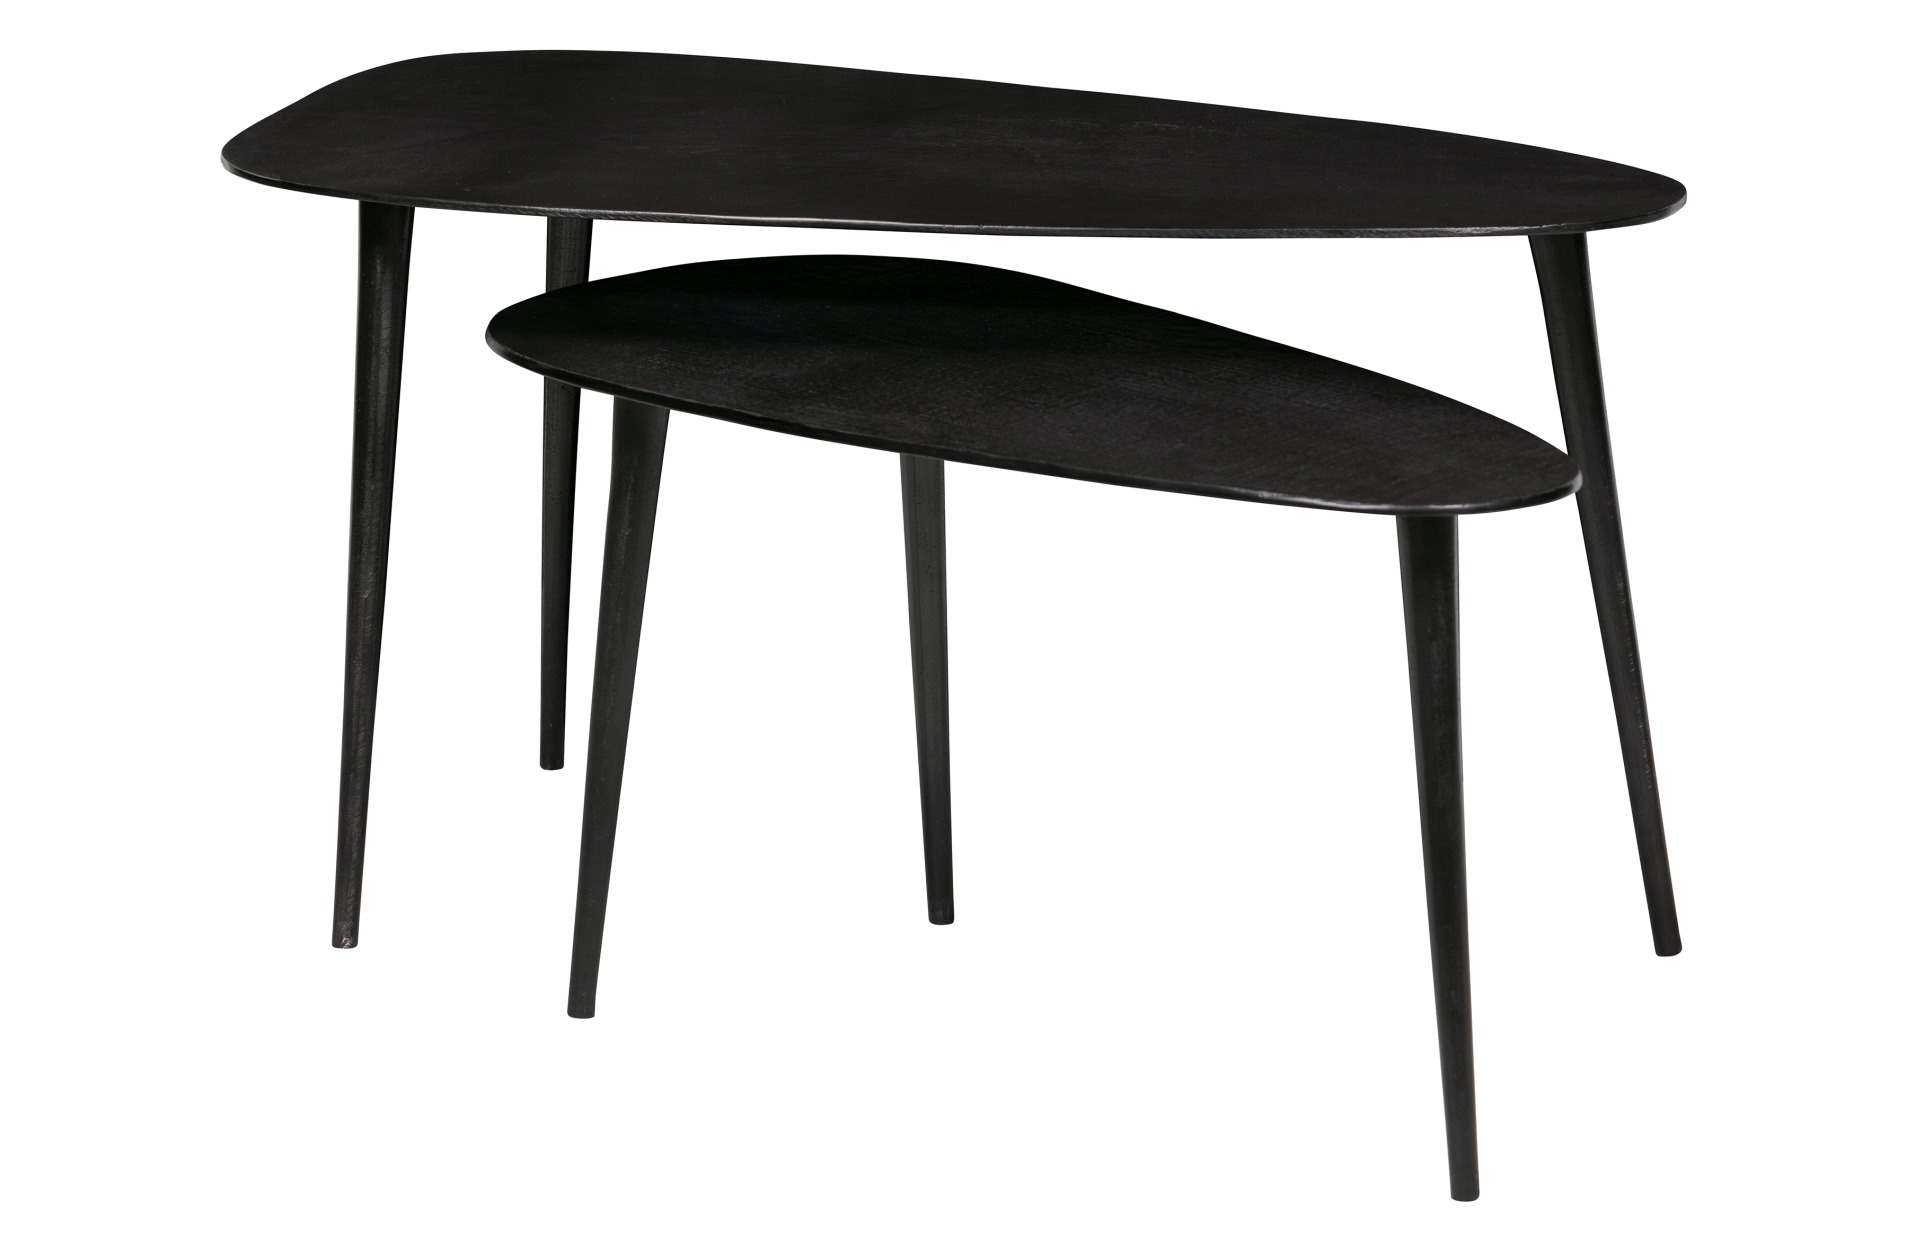 Das Beistelltisch 2er-Set Triangle wurde aus Aluminium gefertigt. Der Tisch überzeugt mit seiner dreieckigen Form. Der Tisch hat einen schwarzen Farbton.